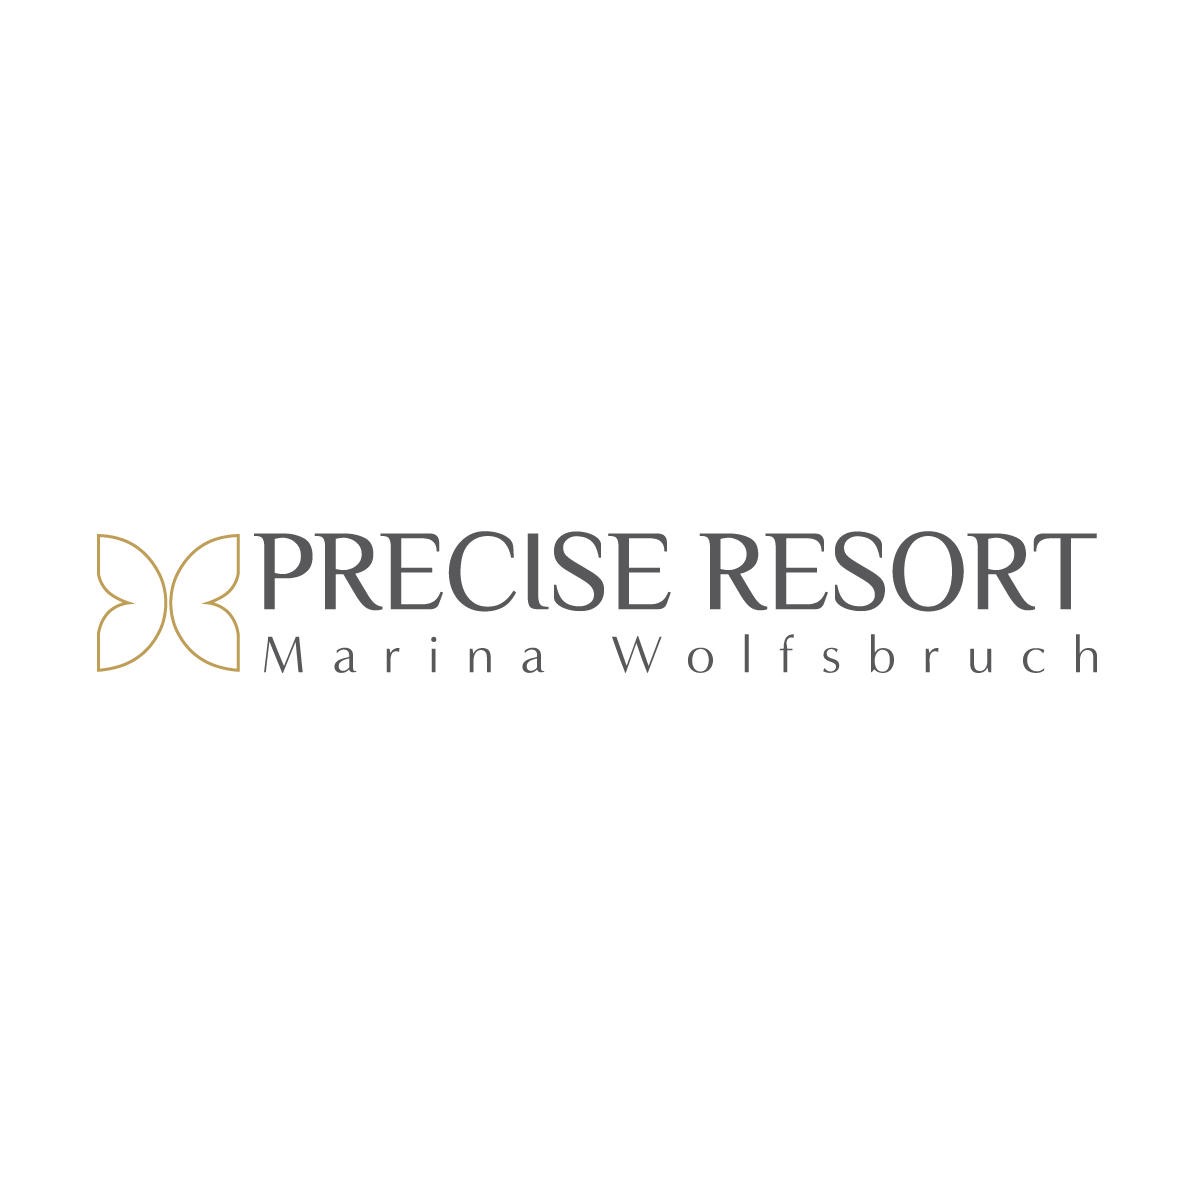 Precise Resort Marina Wolfsbruch in Rheinsberg in der Mark - Logo